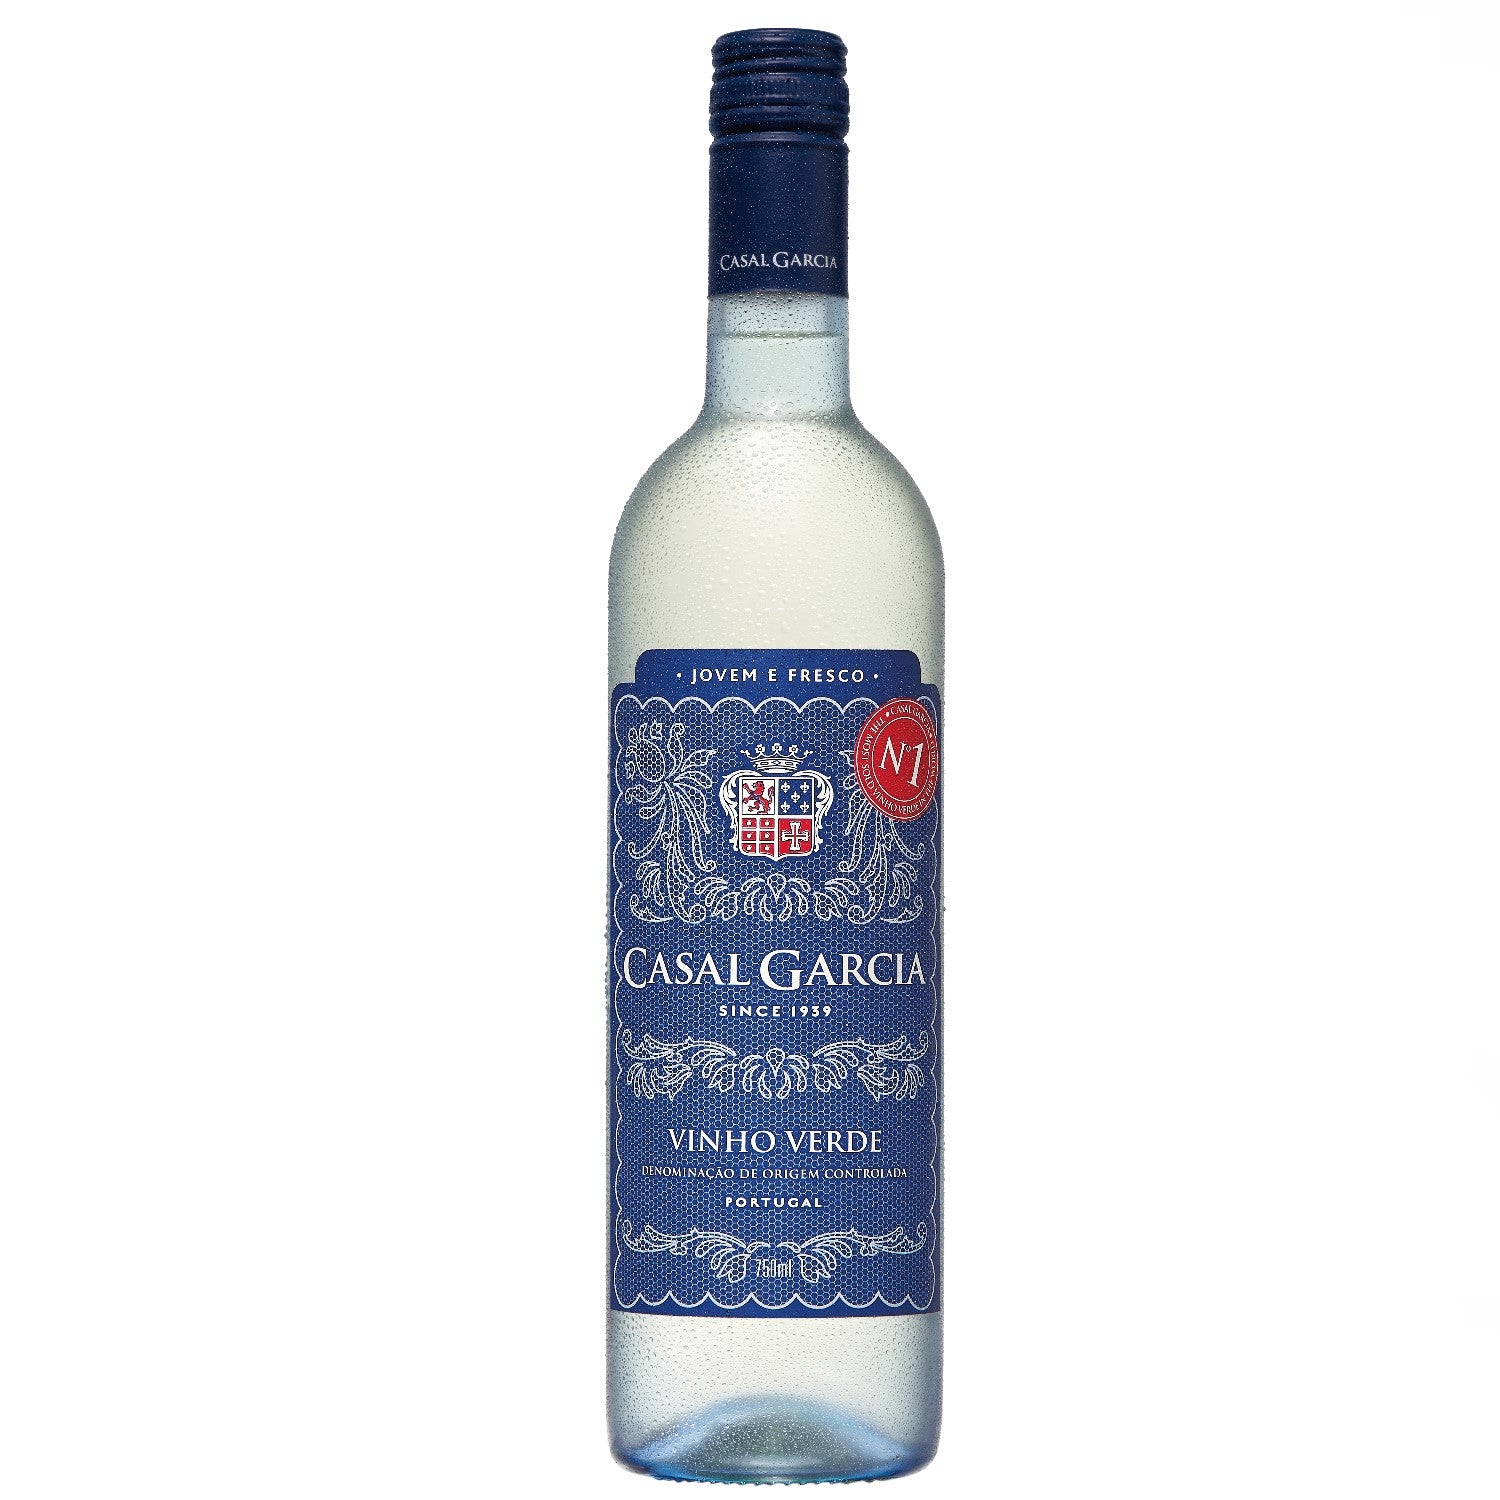 Casal Garcia Vinho Verde Quinta Da Aveleda Trajadura Weißwein Wein halbtrocken Portugal (12 x 0.75l)